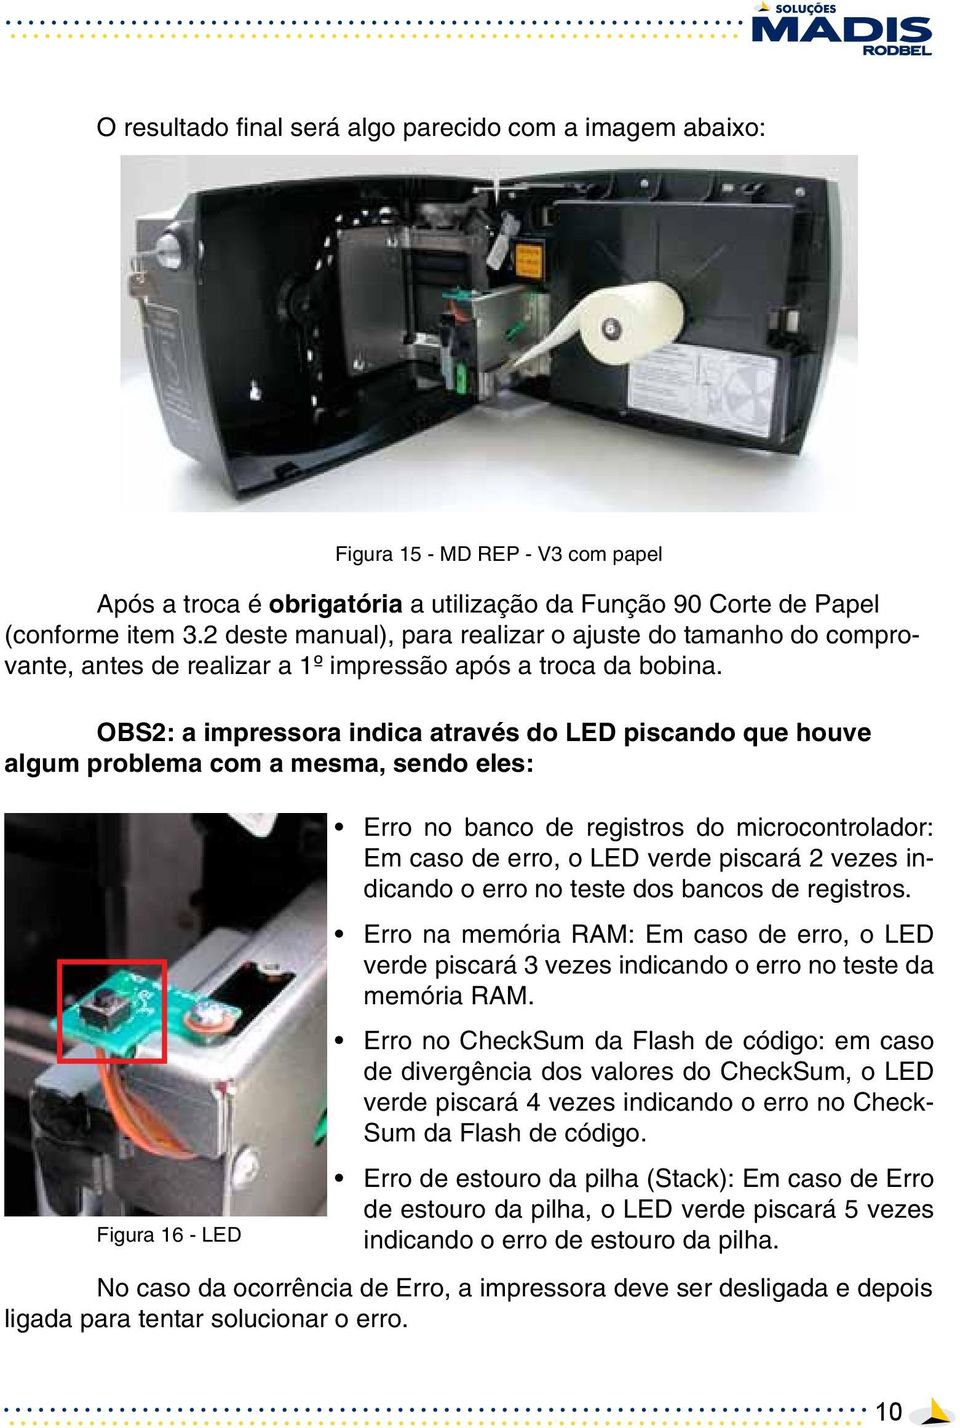 OBS2: a impressora indica através do LED piscando que houve algum problema com a mesma, sendo eles: Figura 16 - LED Figura 15 - MD REP - V3 com papel Erro no banco de registros do microcontrolador: